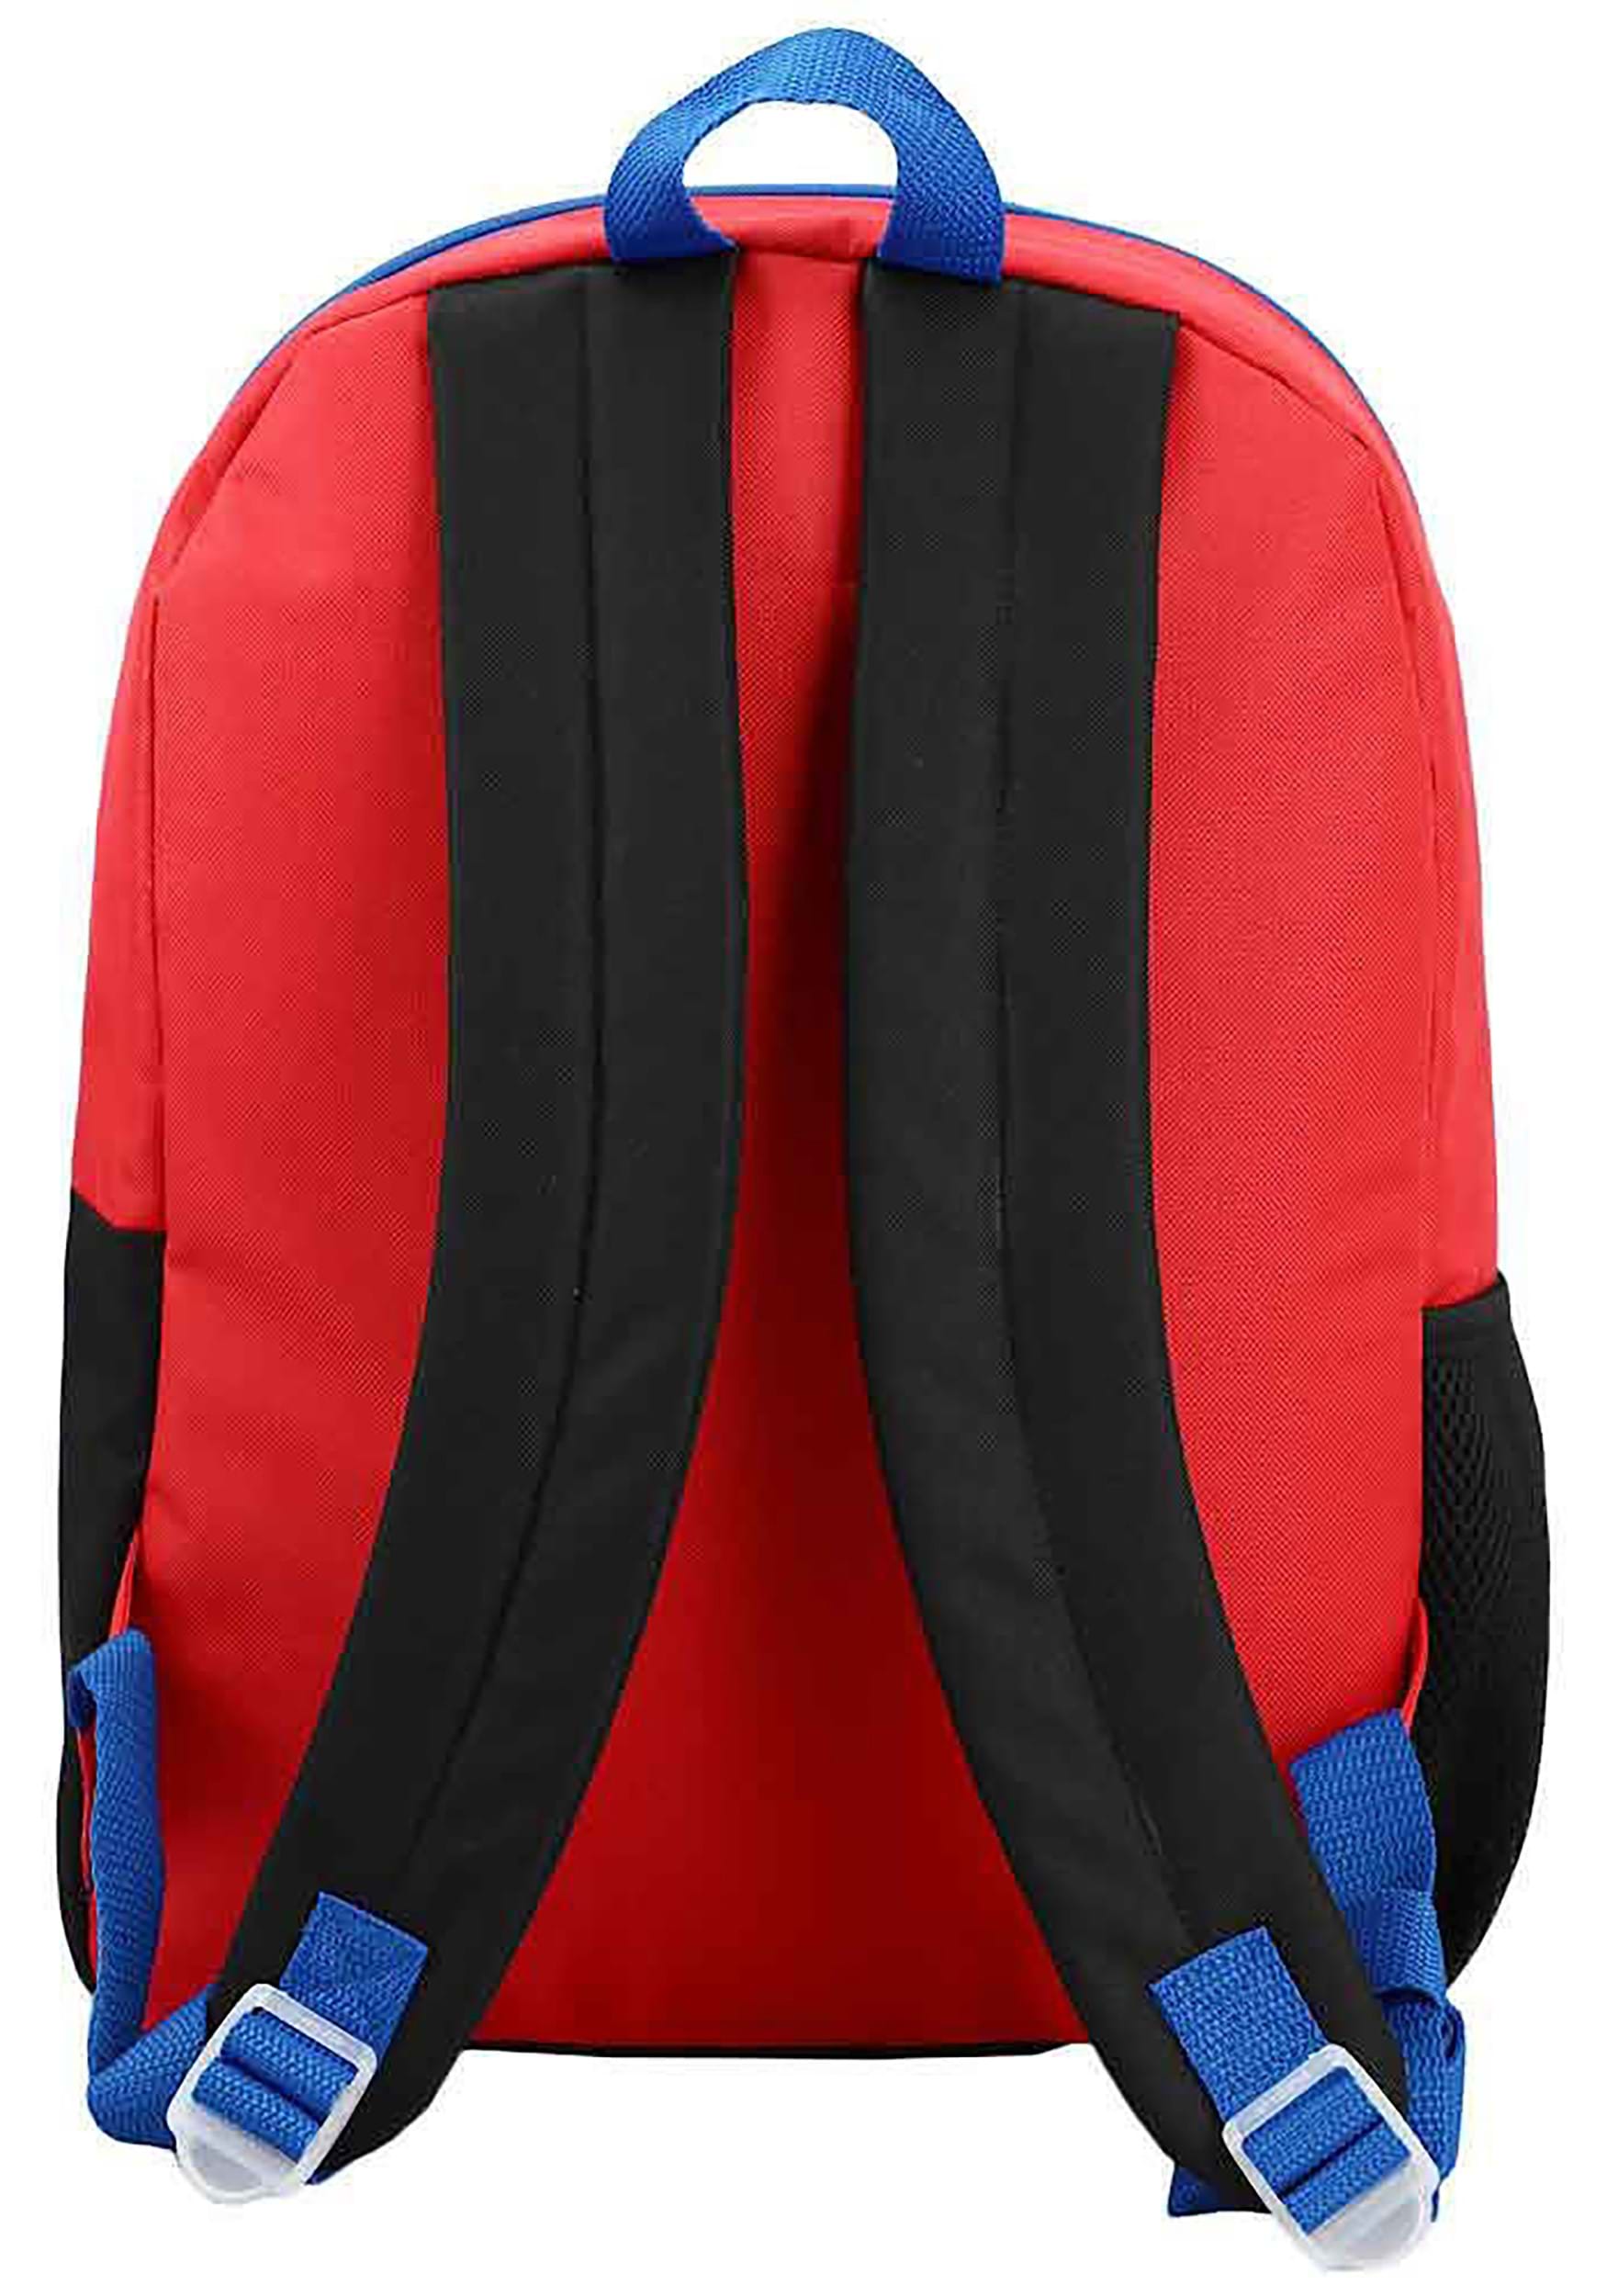 Shakespeare Fishing Backpack Kit Marvel Spiderman BRAND NEW SEALED – The  Odd Assortment